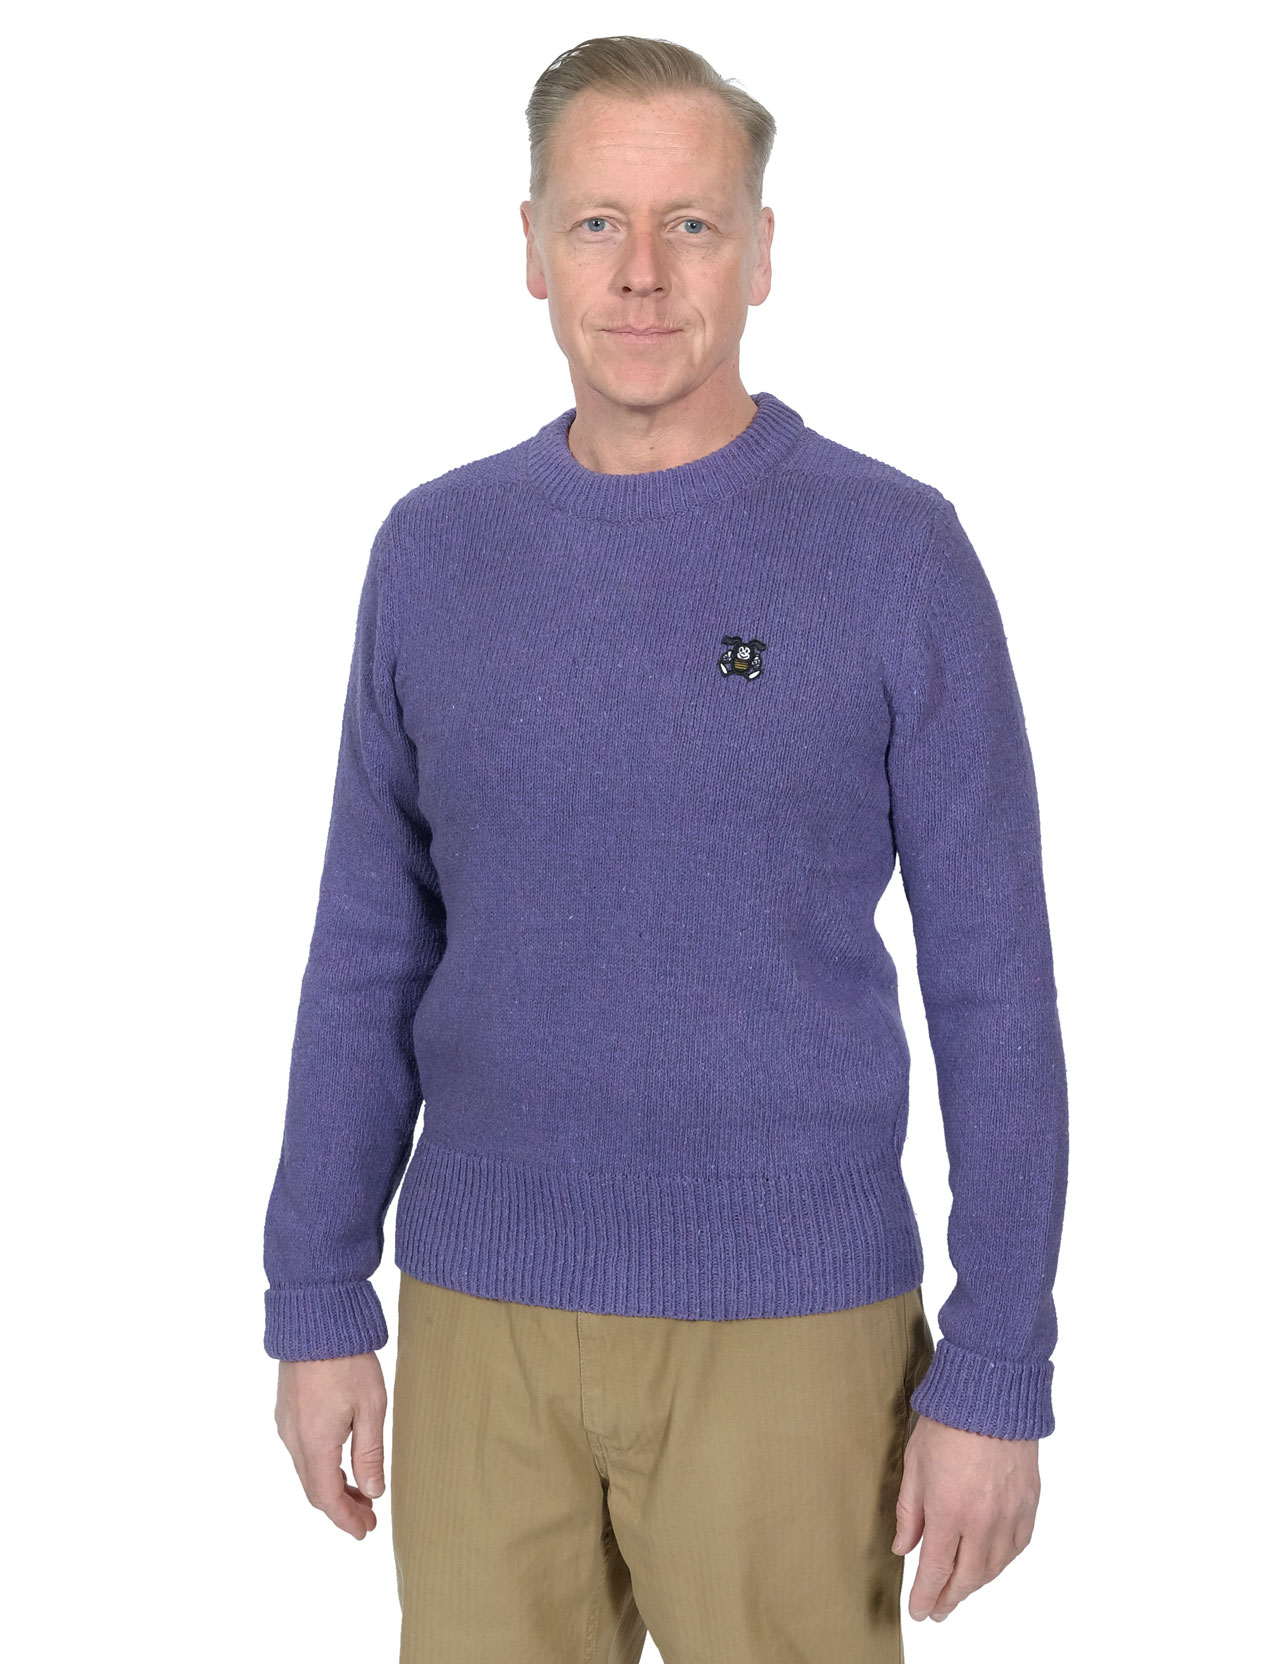 Eat Dust - Officer Denim Sweater - Purple